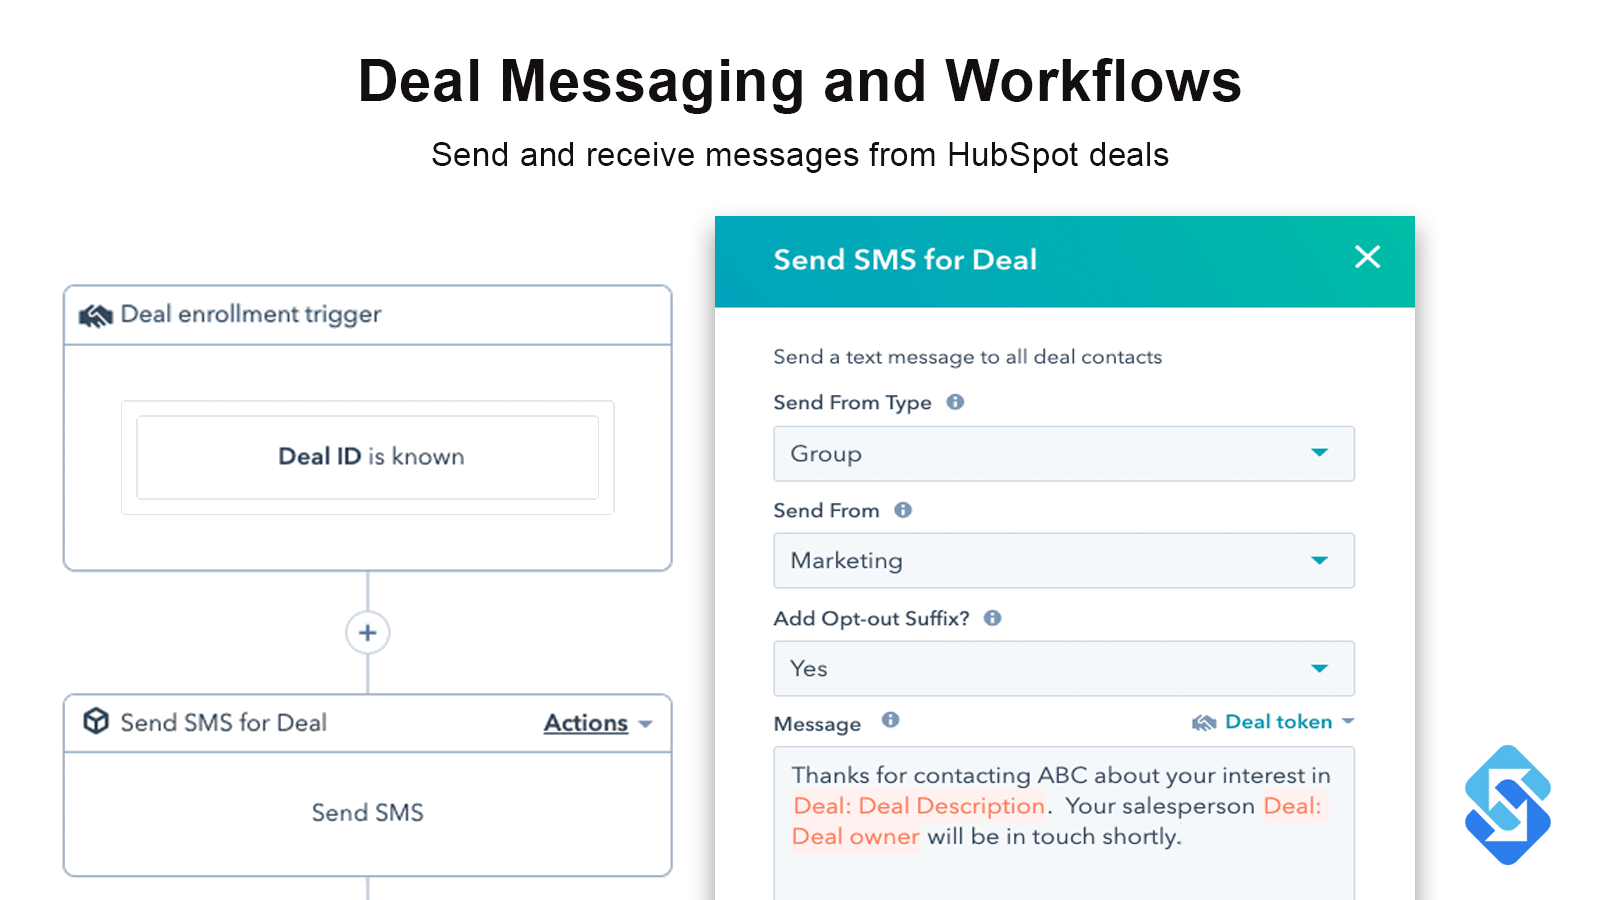 Deal Messaging